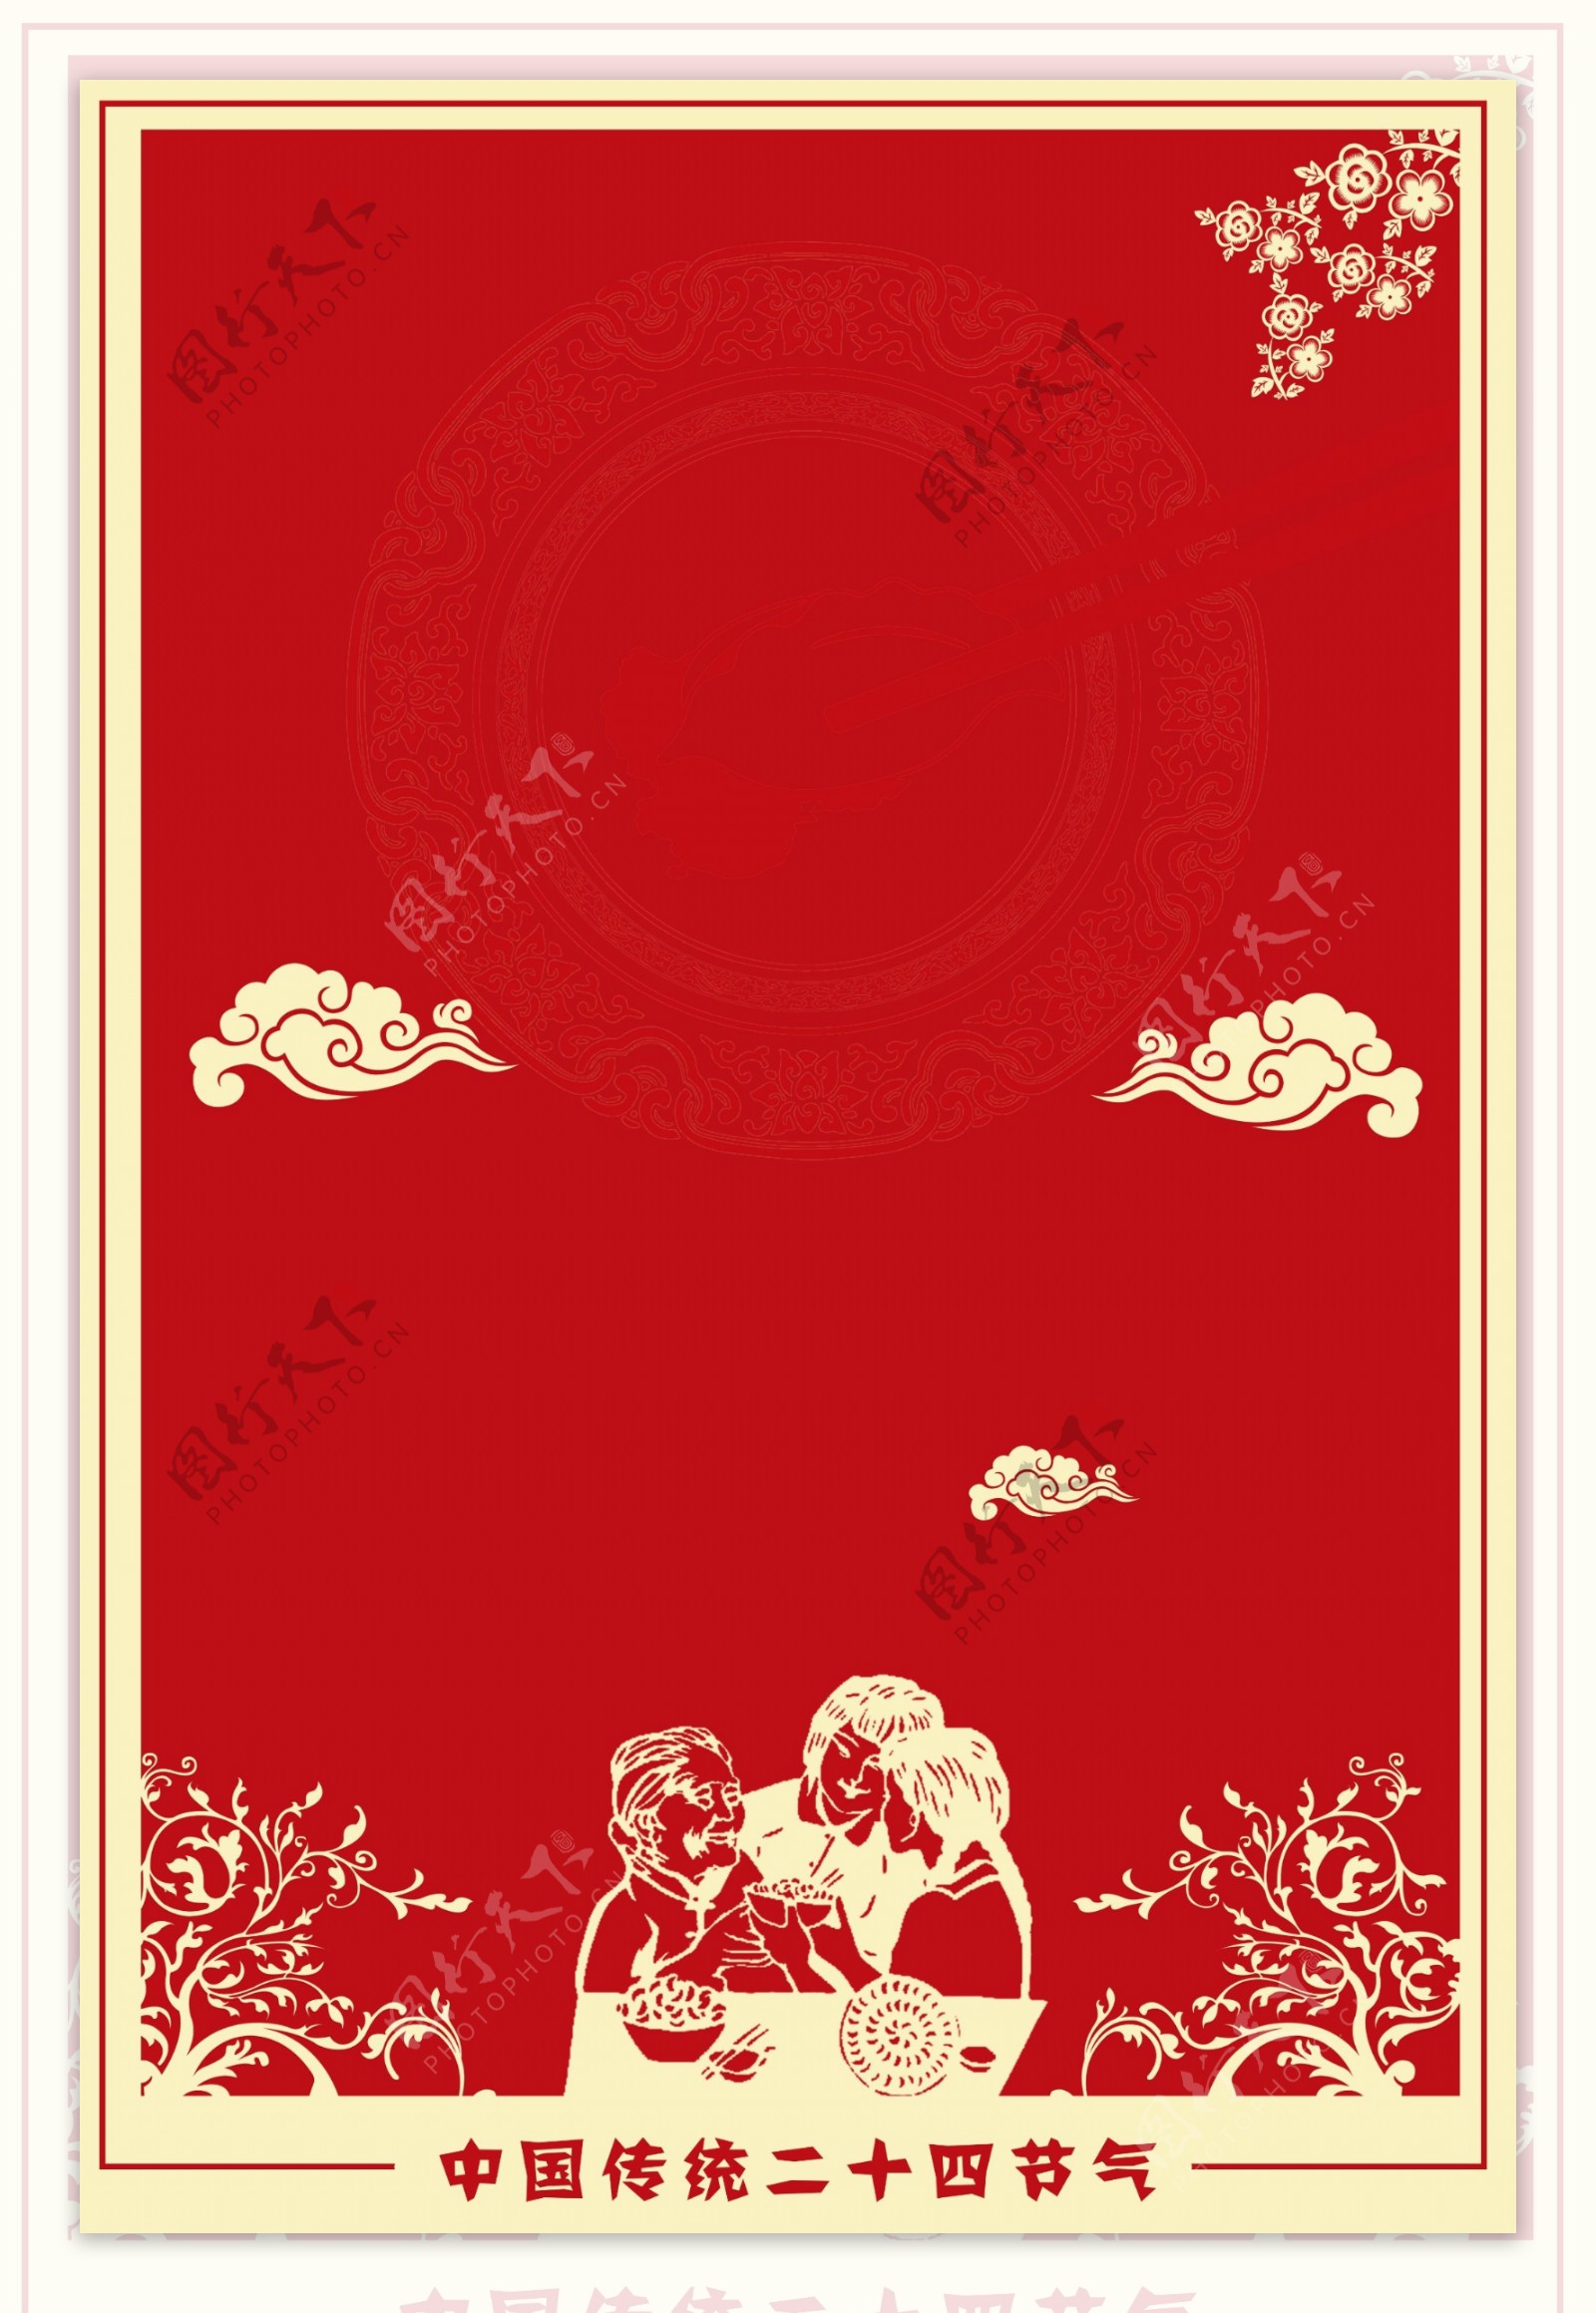 红色喜庆冬至节日海报背景素材